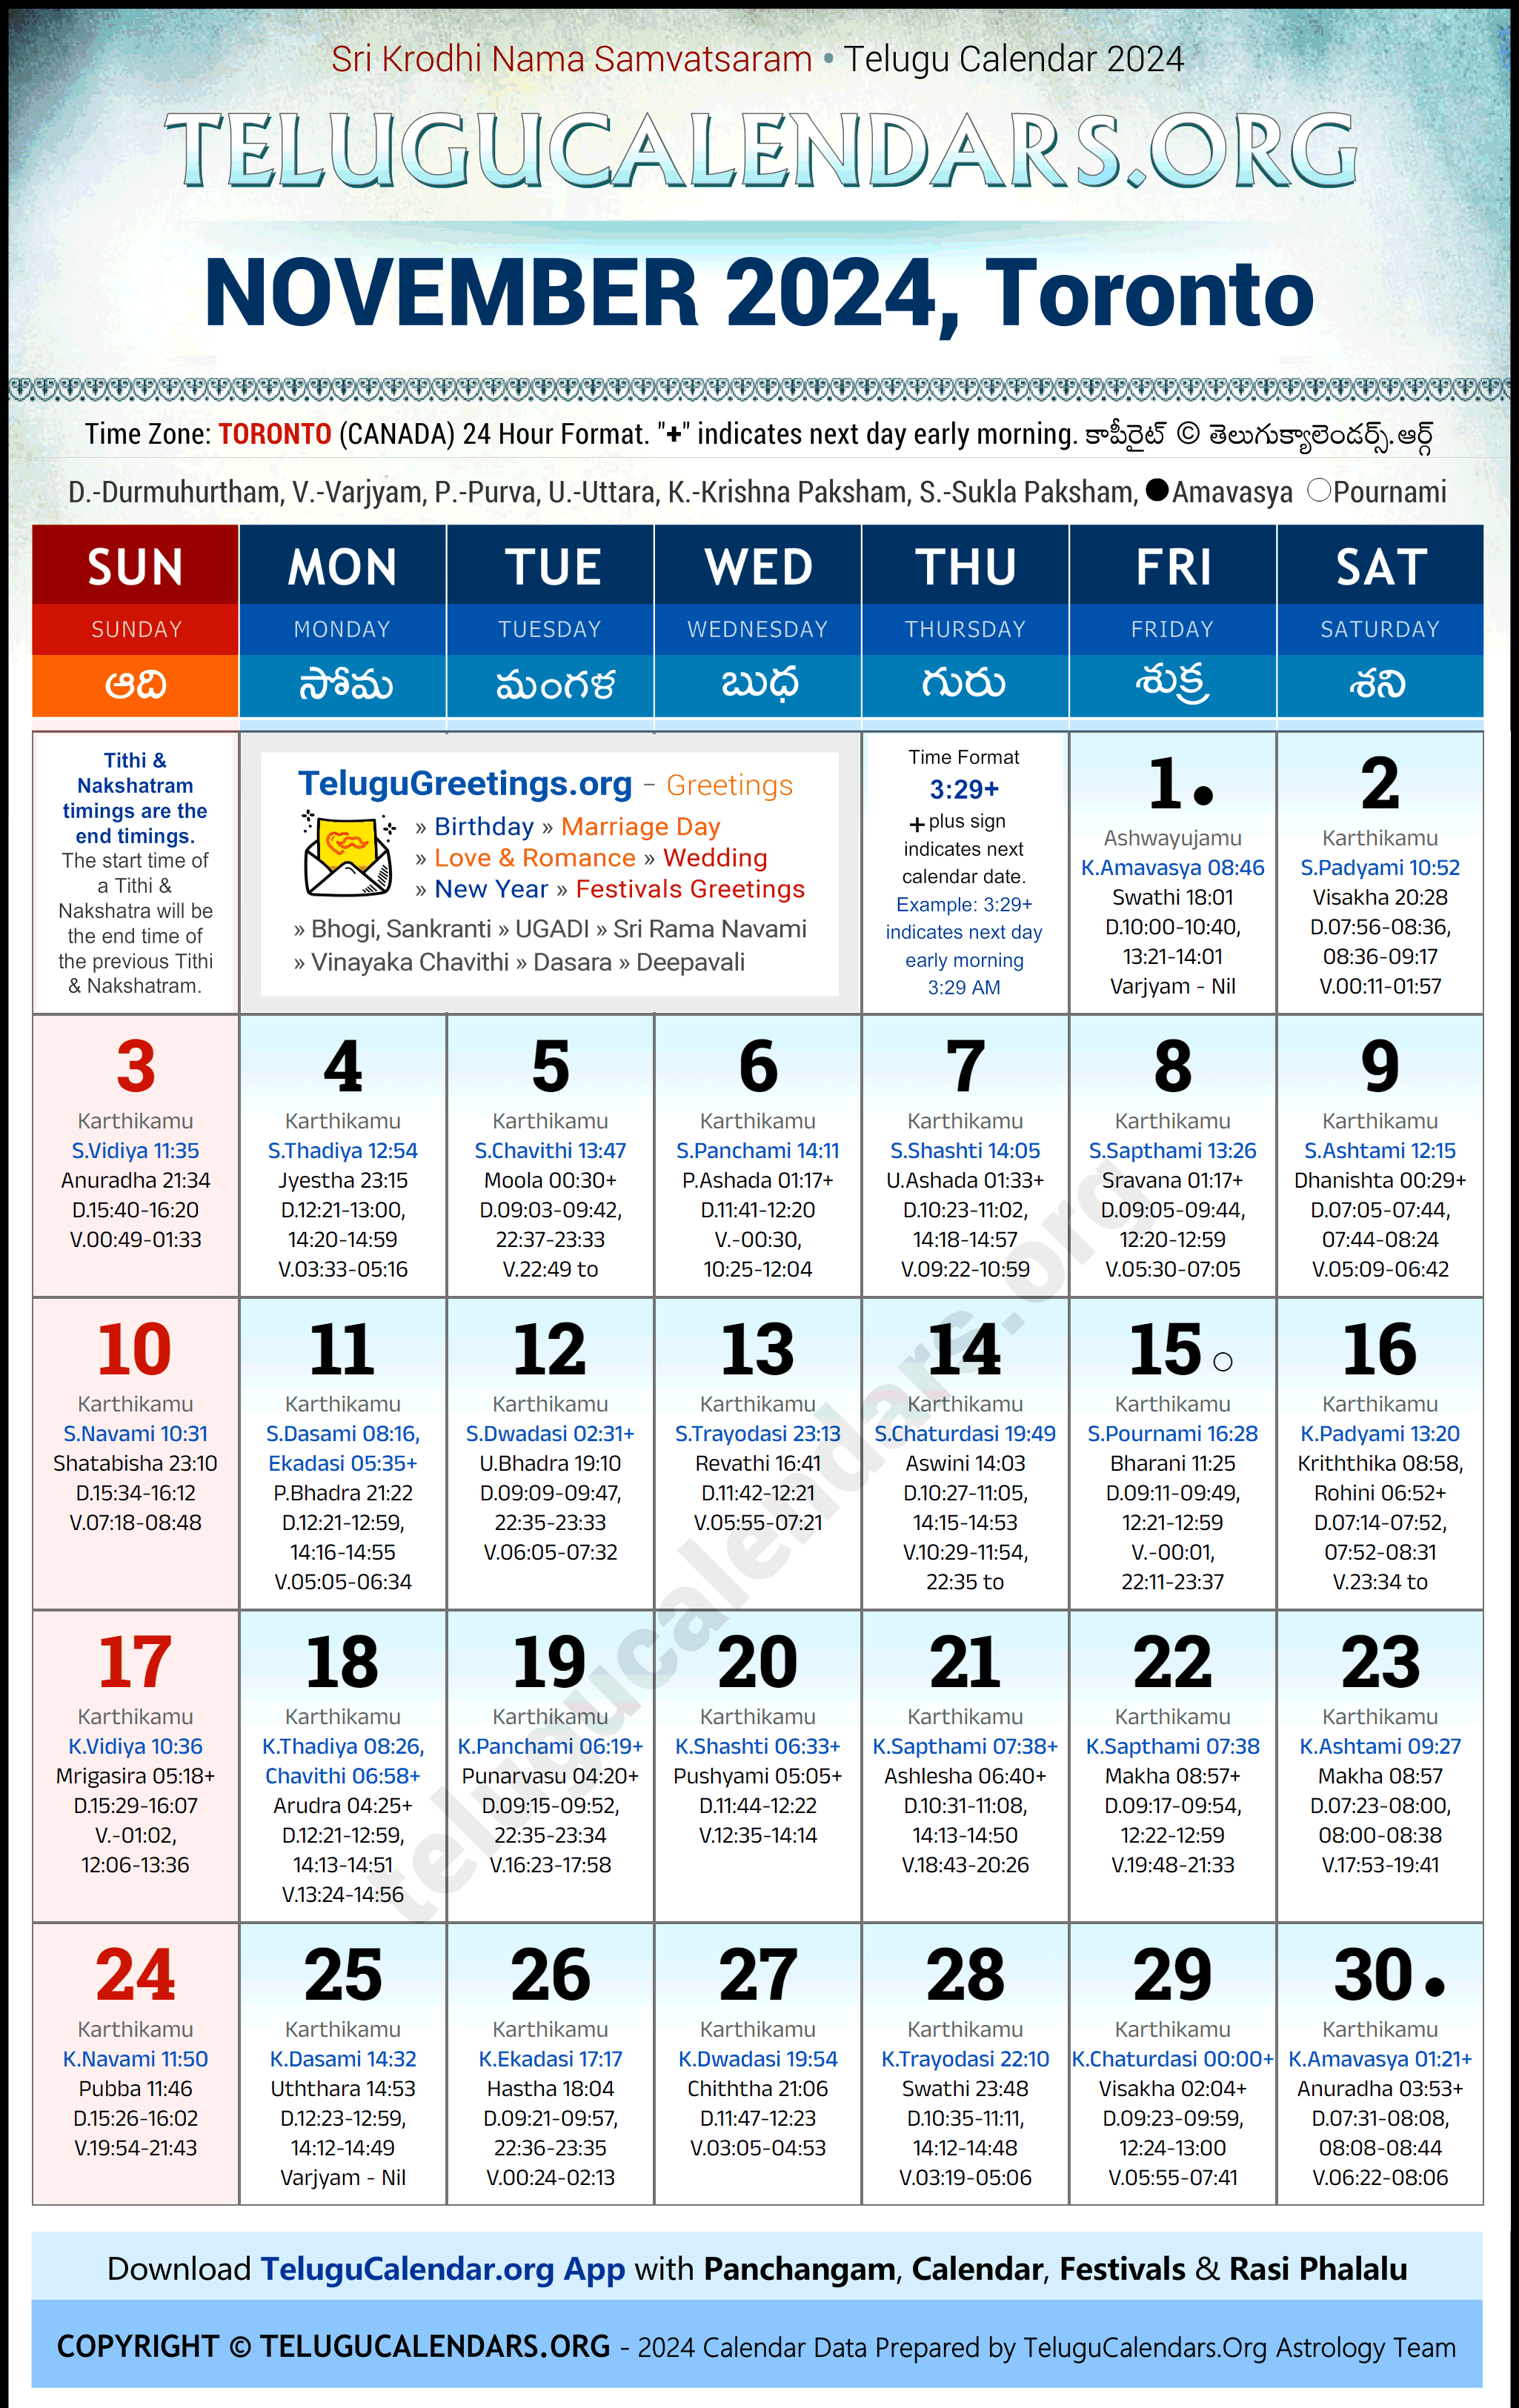 Telugu Calendar 2024 November Festivals for Toronto